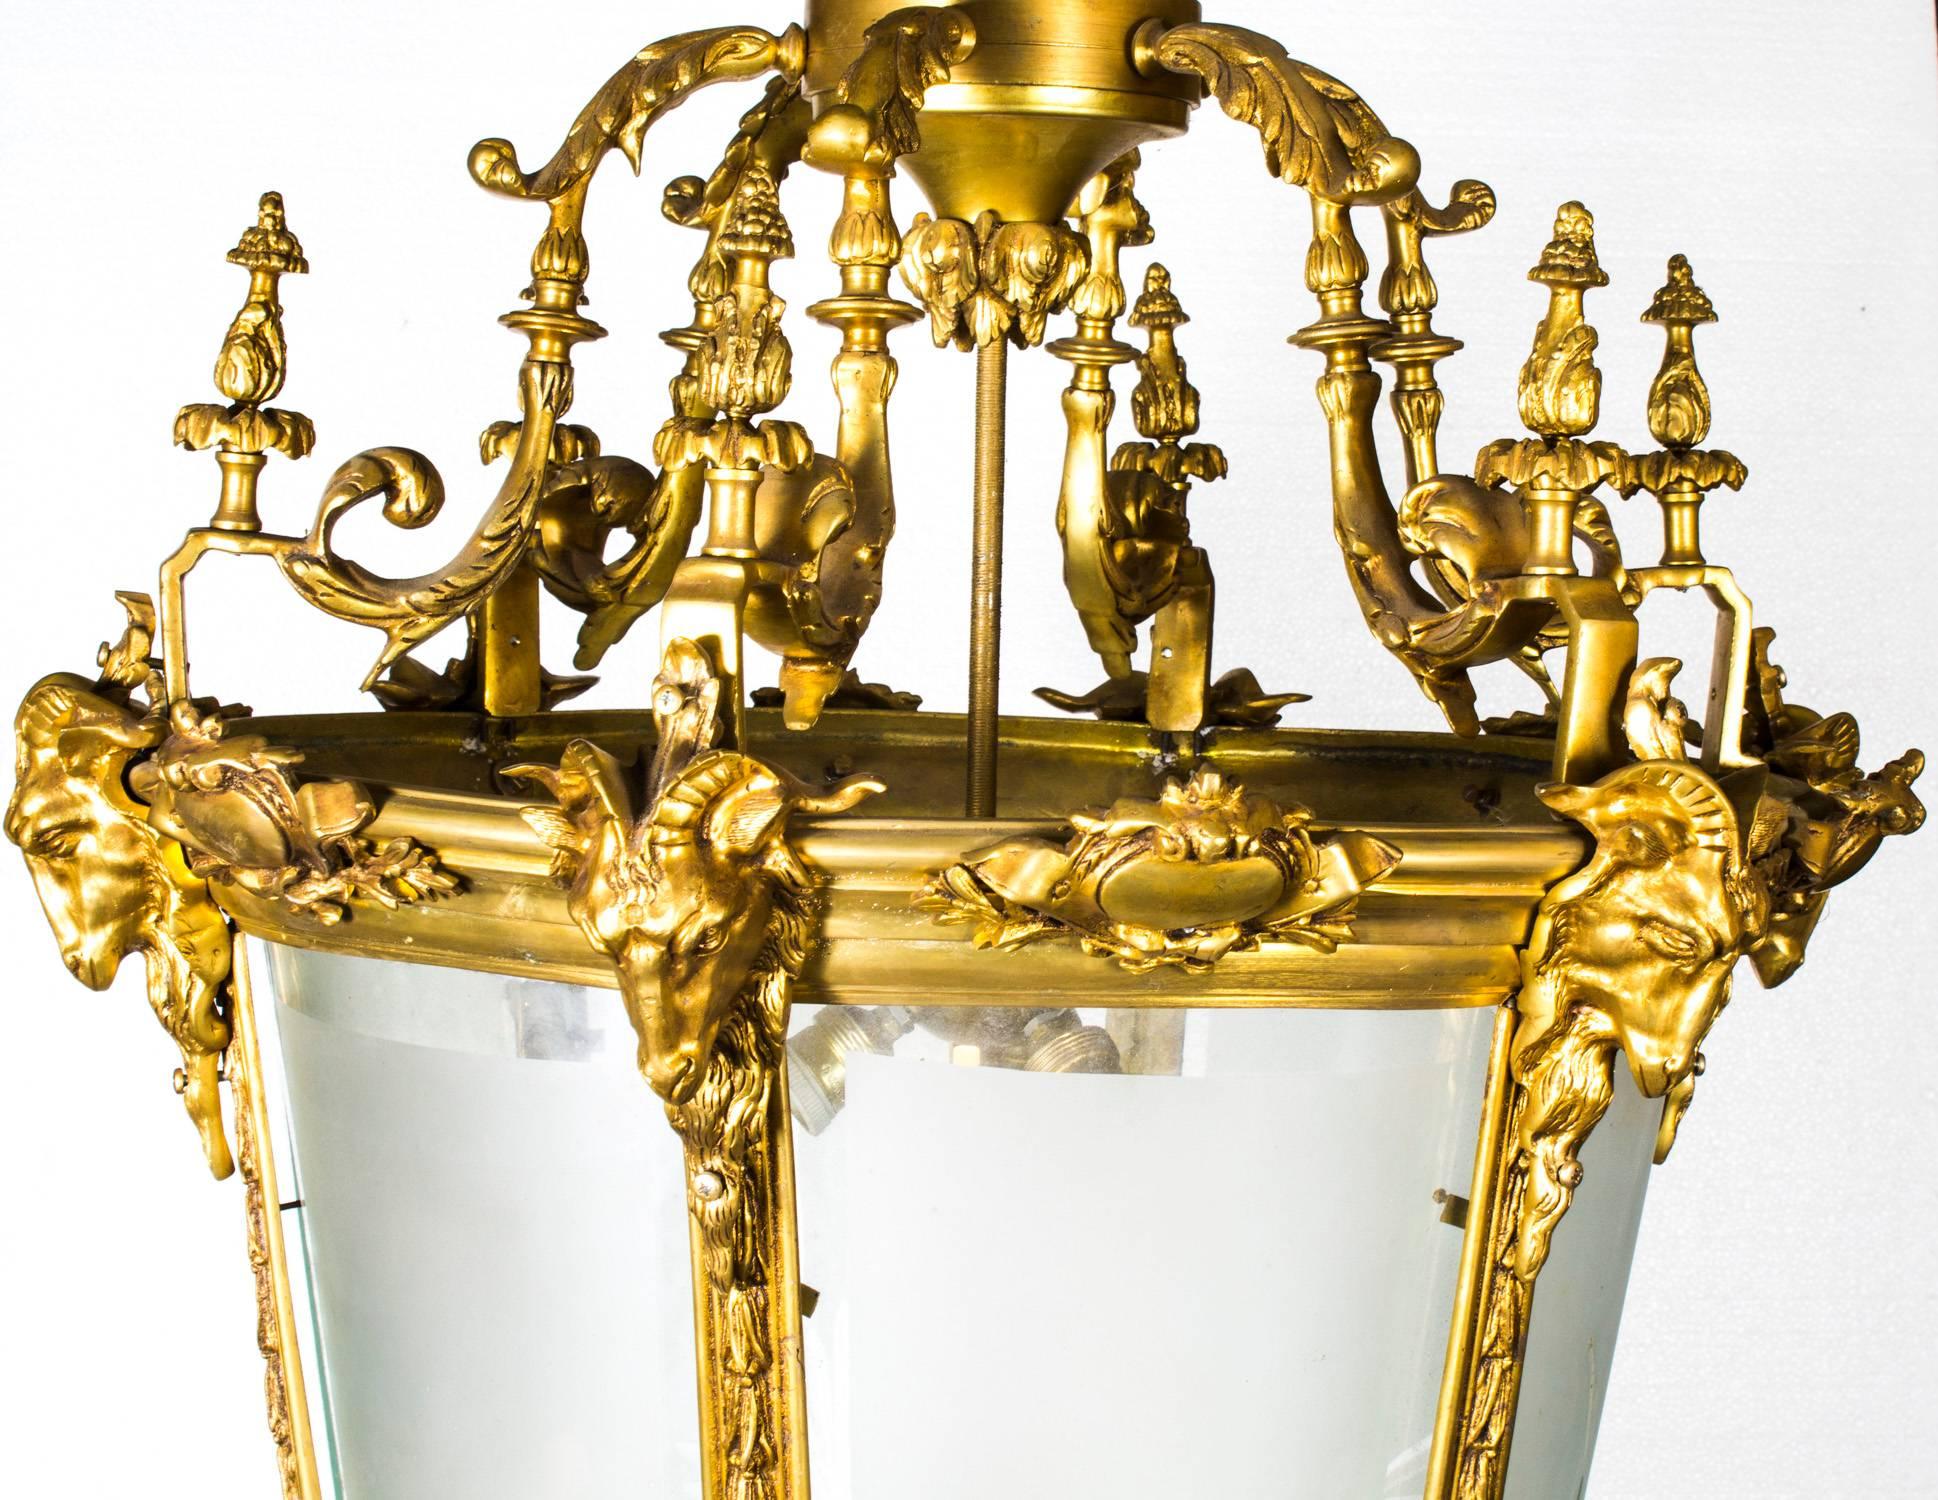 Eine außergewöhnliche und beeindruckende große vergoldete Bronzelaterne mit sechs Lichtern, die aus dem letzten Viertel des 20. Jahrhunderts stammt.

Diese hervorragende dekorative Laterne ist fein gegossen und gemeißelt in massiver Bronze, von